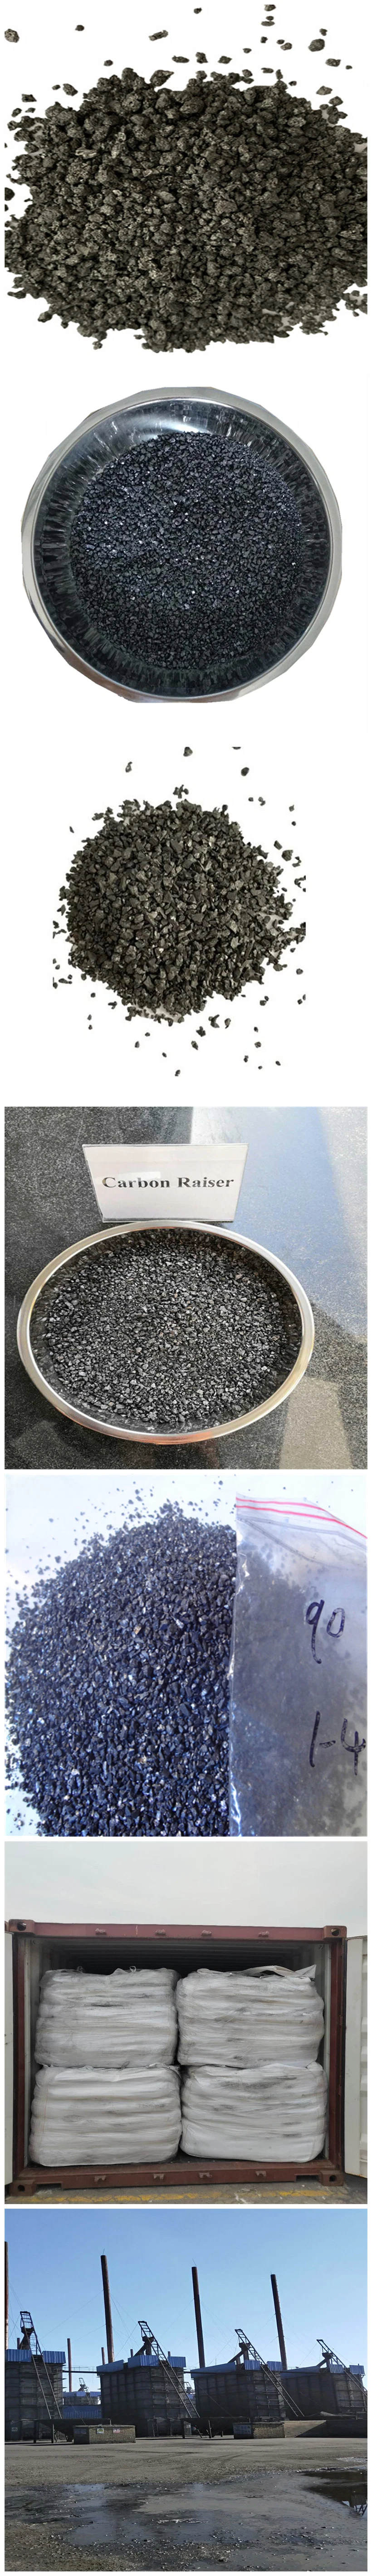 GPC Graphite Recarburizer GPC Artificial Graphite Carbon Raiser for Foundry|High Carbon Additive